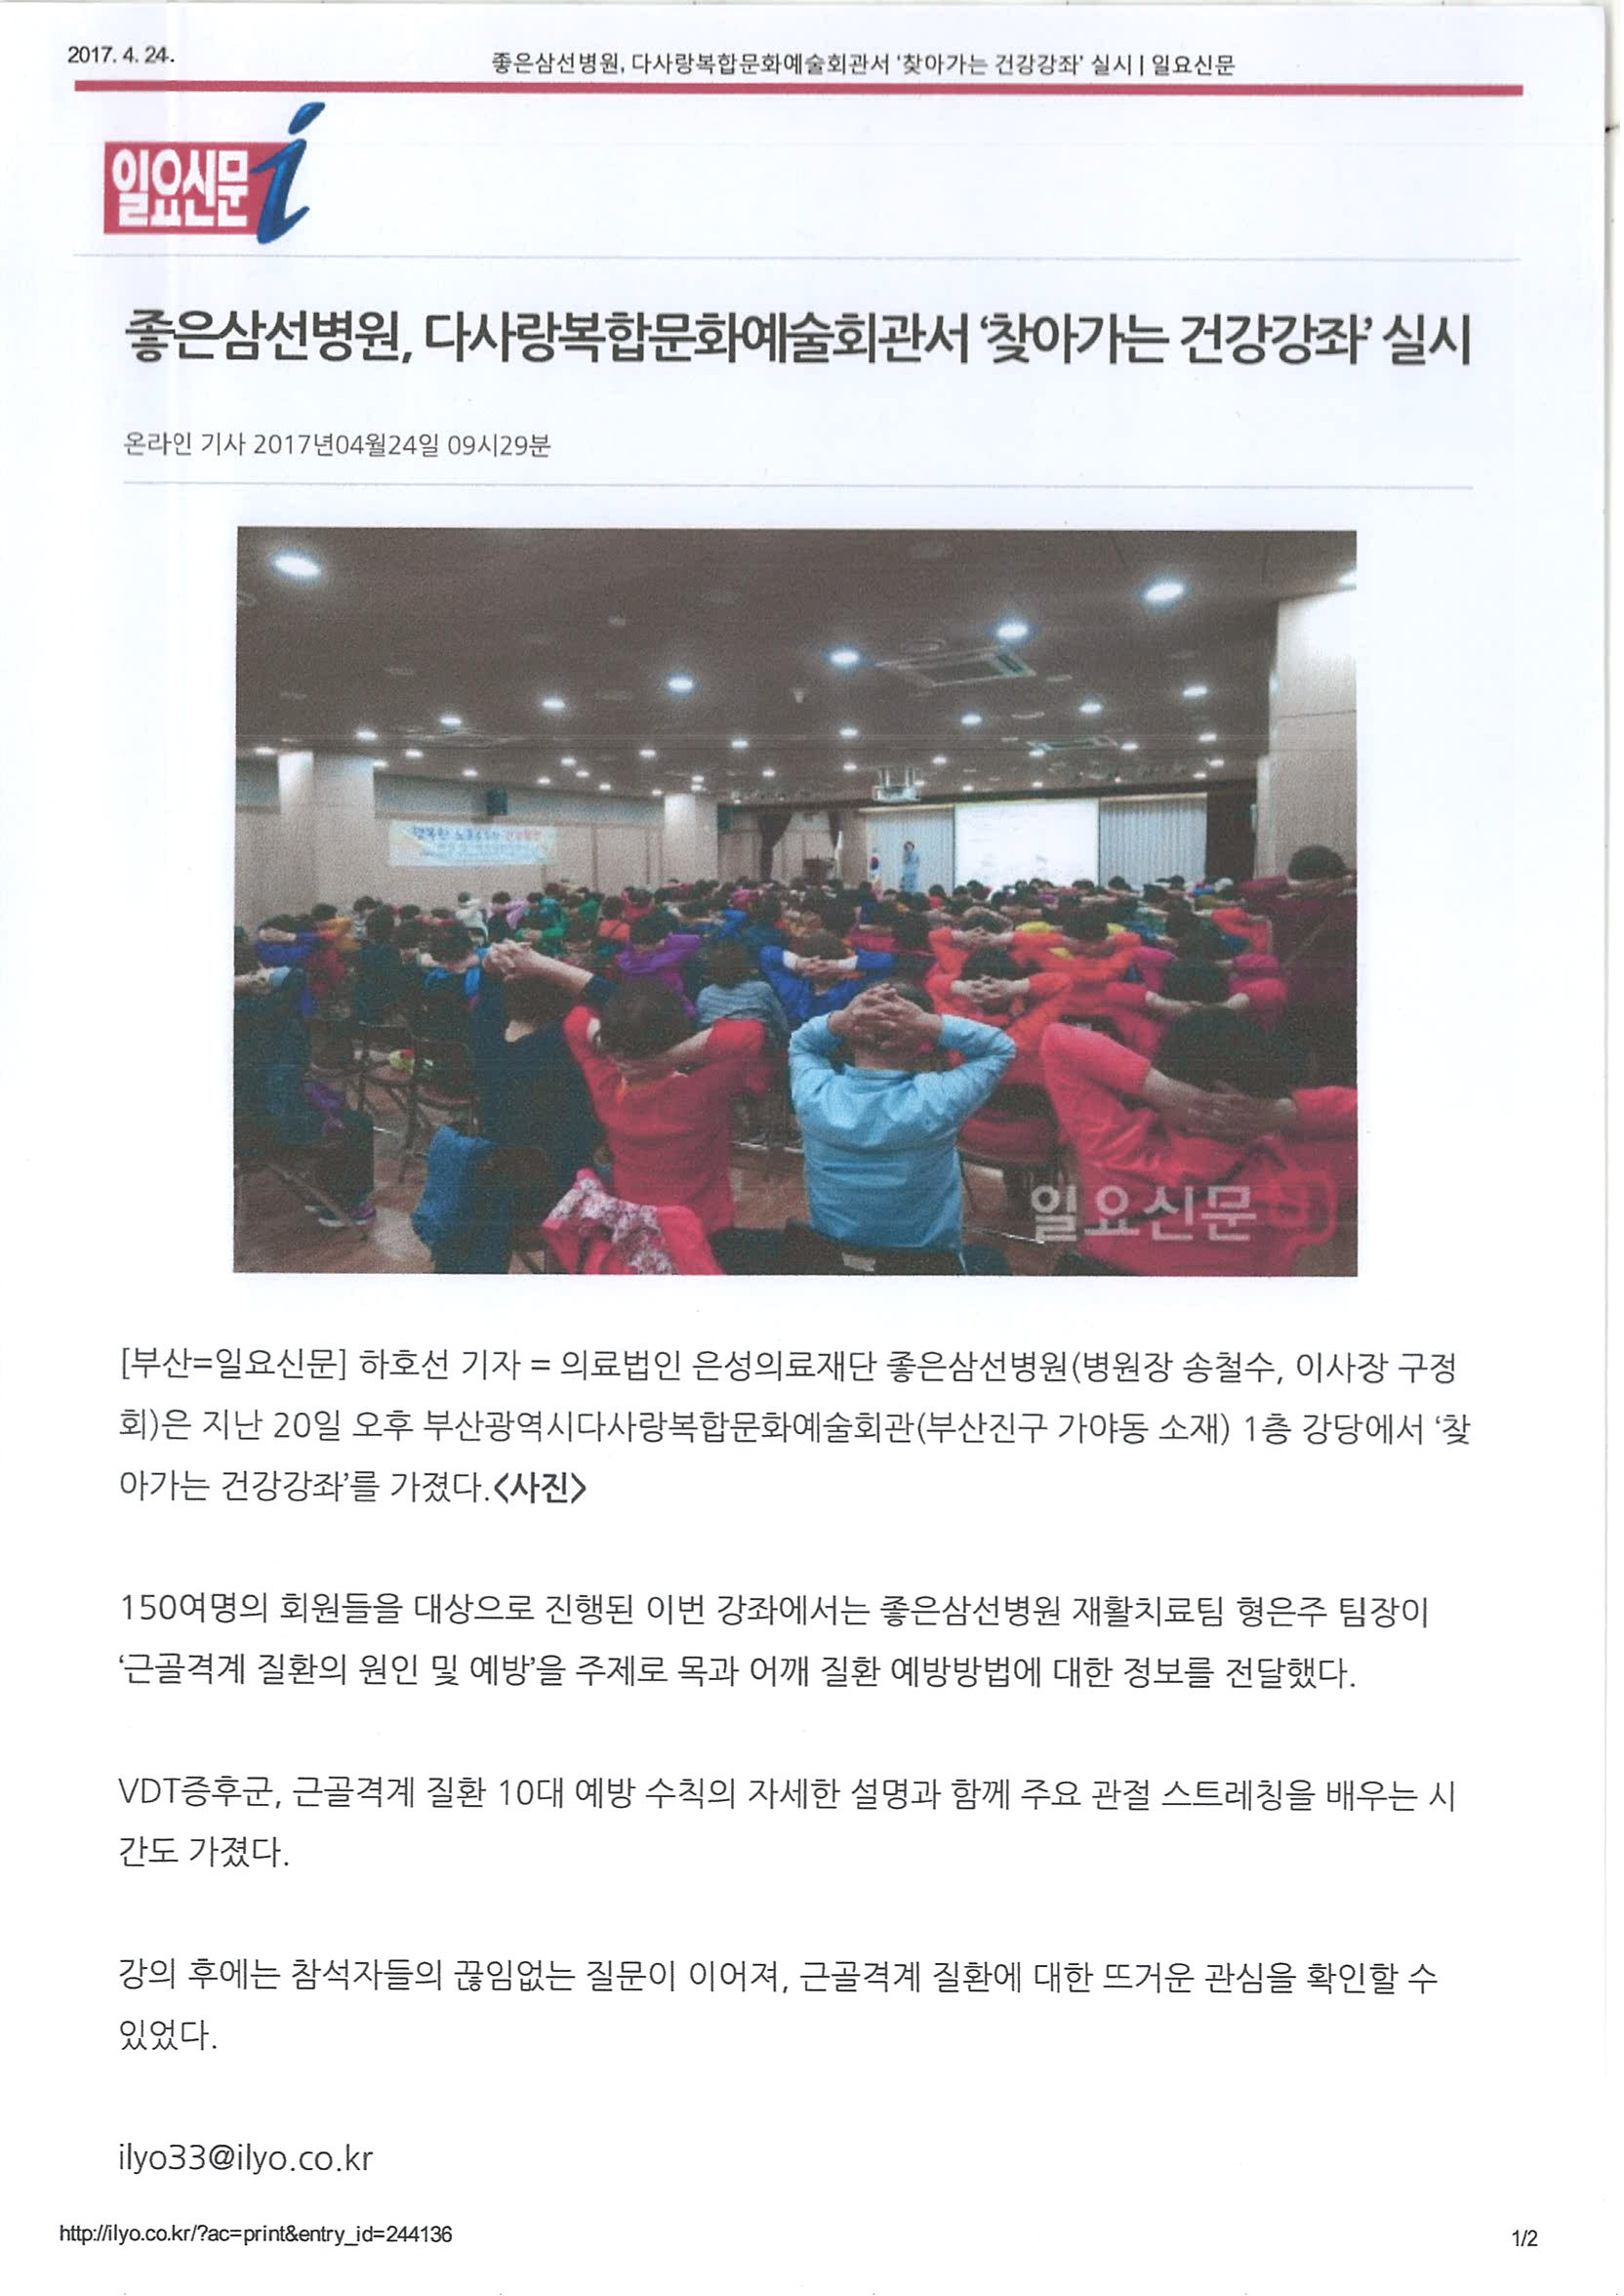 [일요신문]좋은삼선병원, 다사랑복합문화예술회관서 '찾아가는 건강강좌' 실시